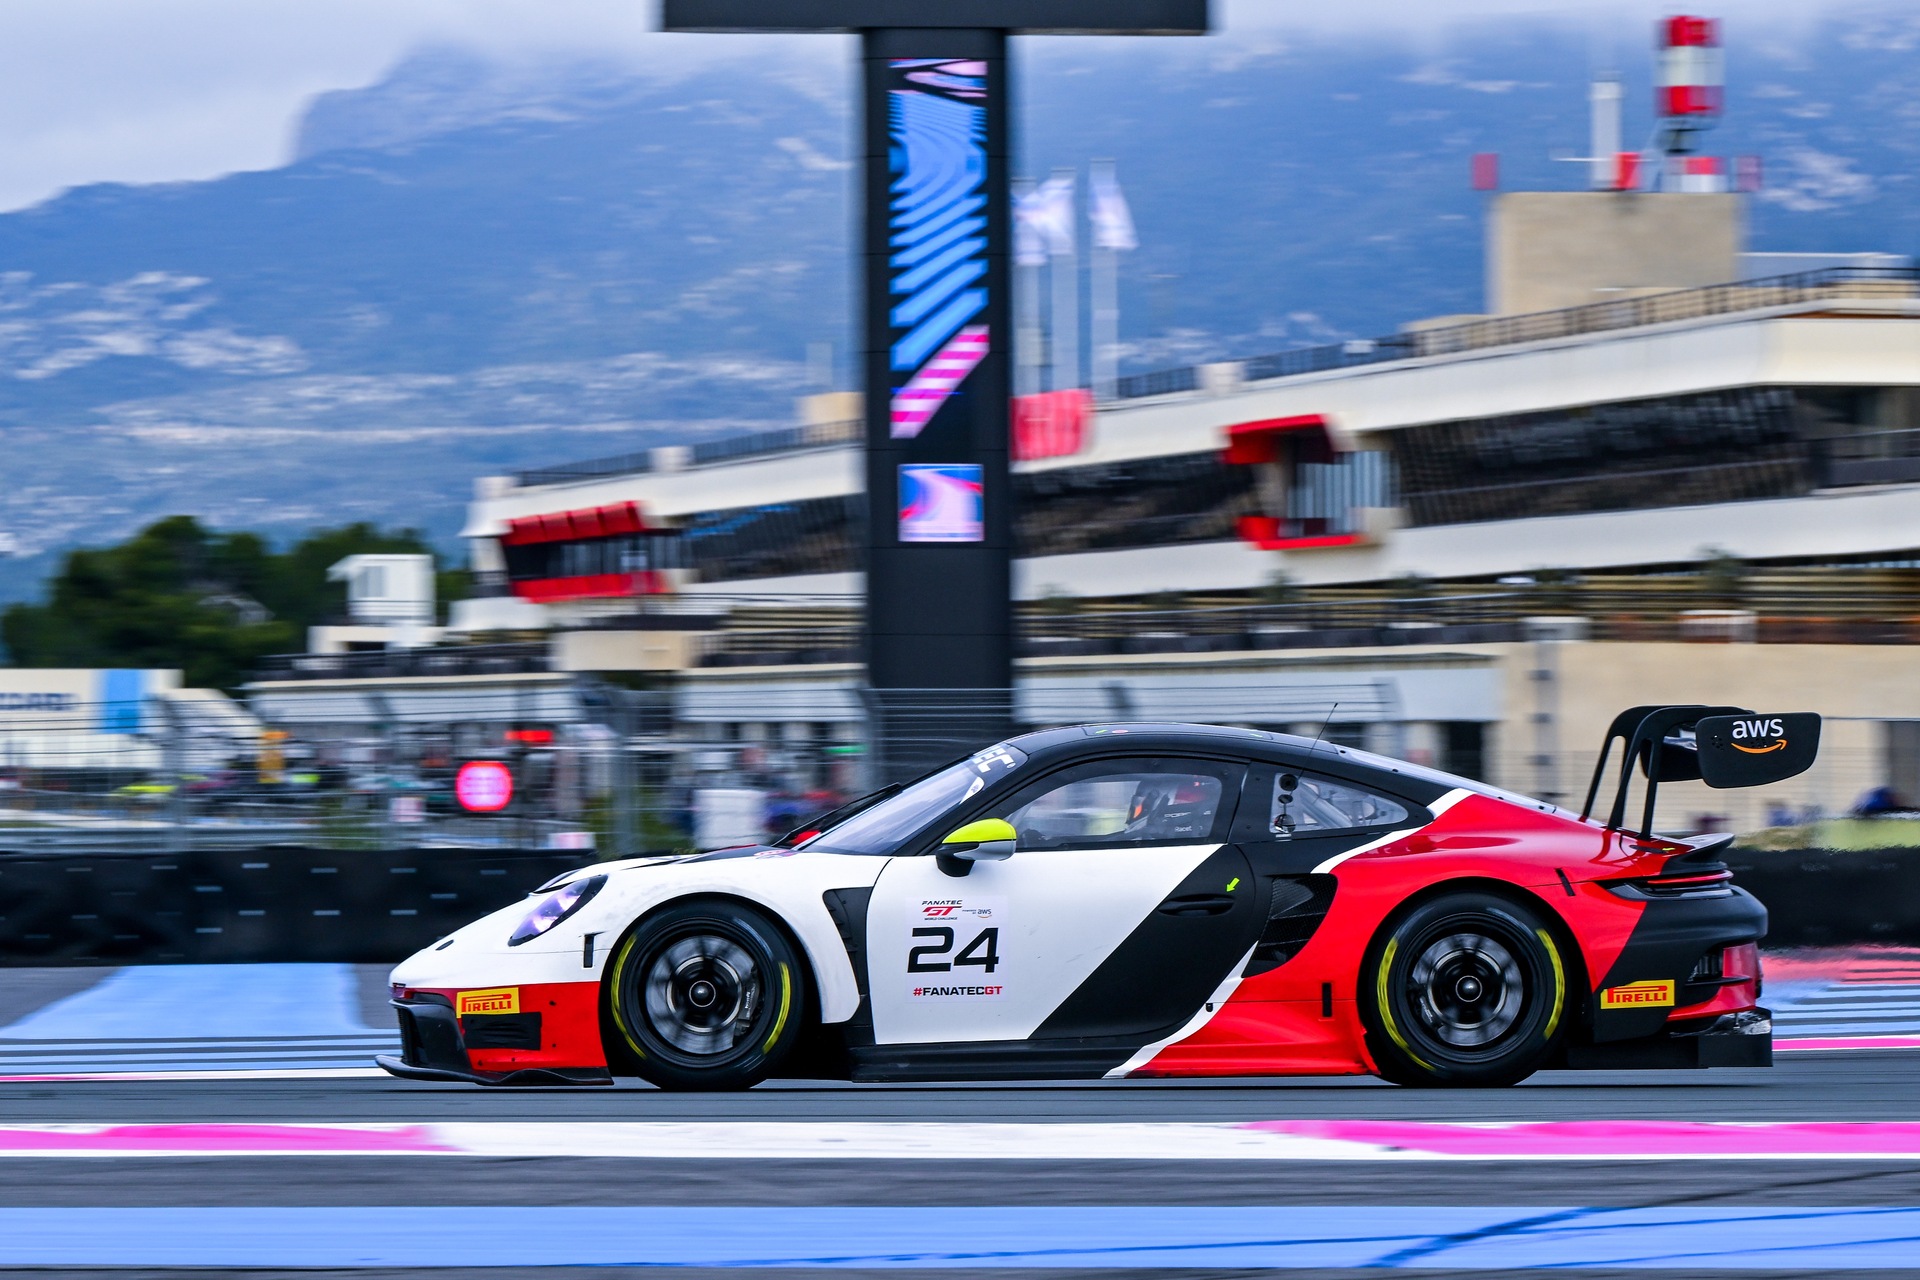 ალექს ფონტანა: Porsche GT3 R Porsche Ticino ცენტრებიდან და მანქანების კოლექცია, რომელიც მიიღებს მონაწილეობას GT World Challenge-ში 2023 წელს ტიჩინოს მძღოლთან, ივან ჯაკომასთან და ნიკი ლეუტვილერთან ერთად.